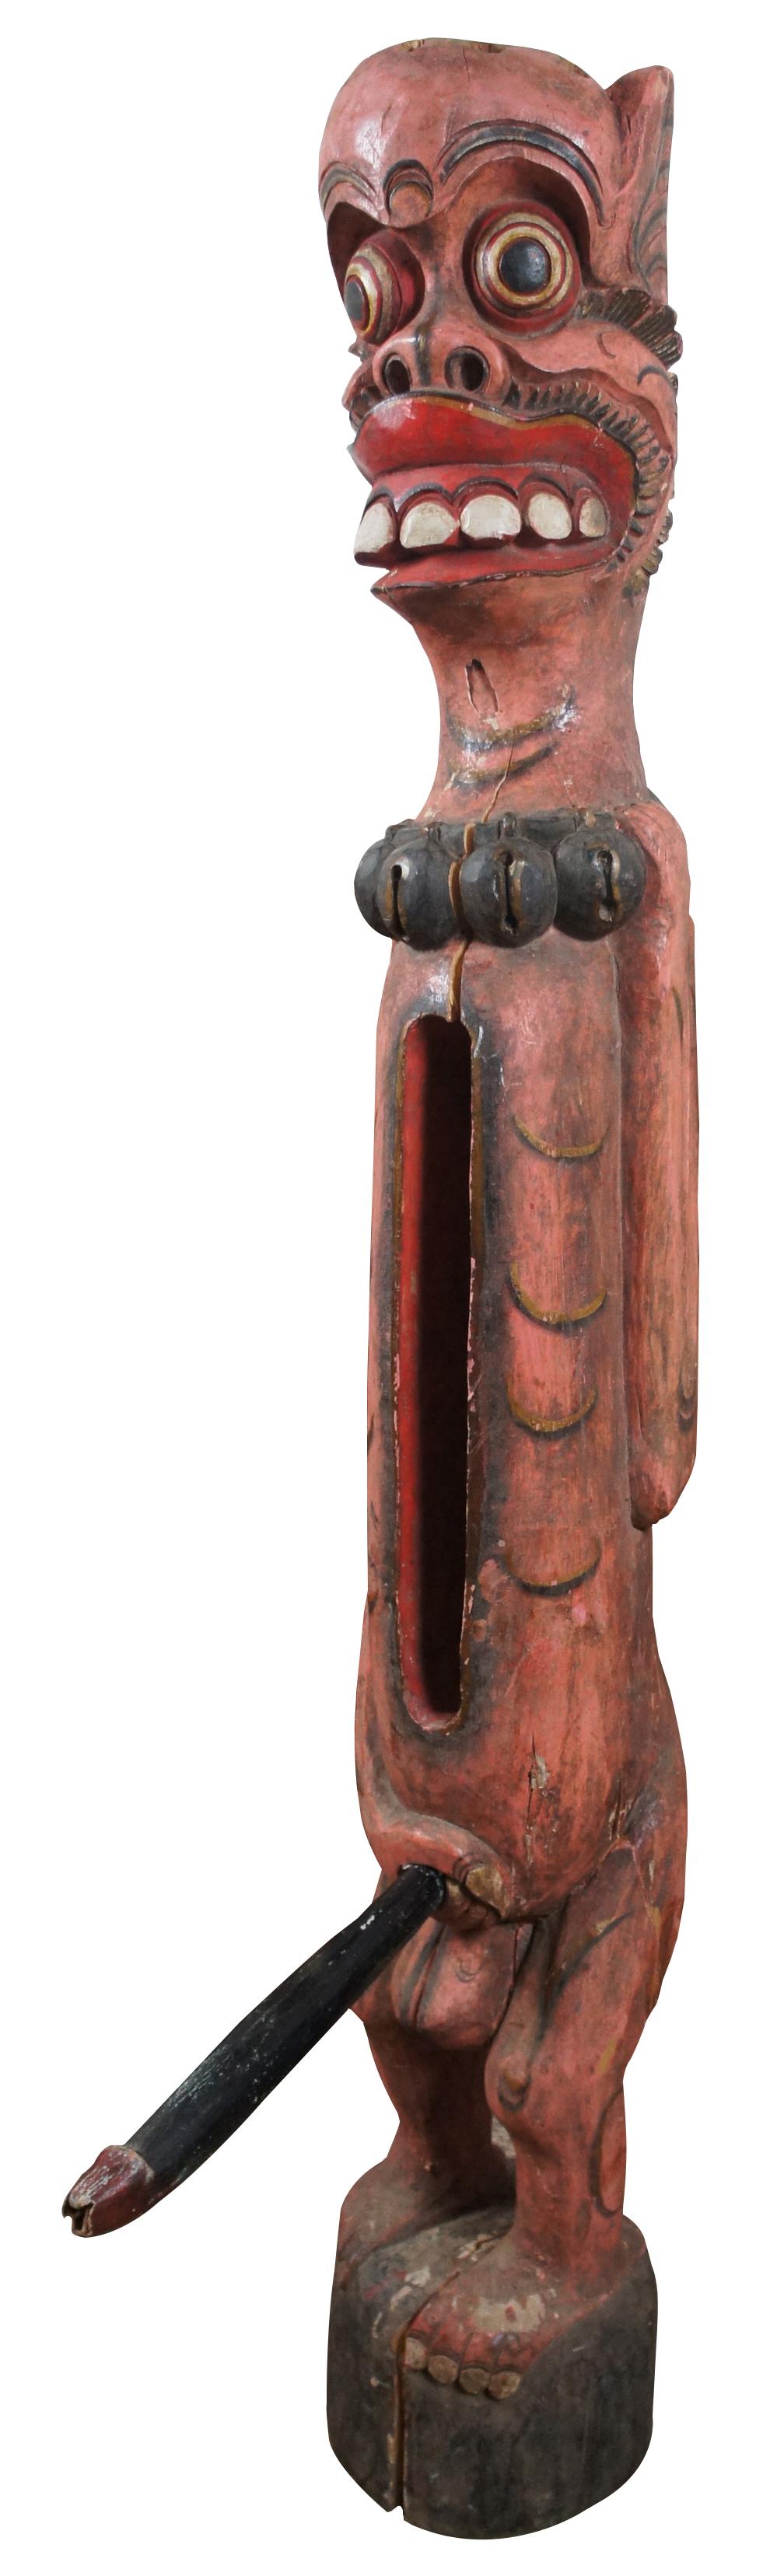 Vintage indonesische handgeschnitzte hölzerne Schlitztrommel / Stammes Fruchtbarkeit Figur in rot und schwarz mit Glocken um den Hals und offenen Raum in den Rumpf, um die abnehmbaren Phallus / Penis zu speichern gemalt.

Maße: 8